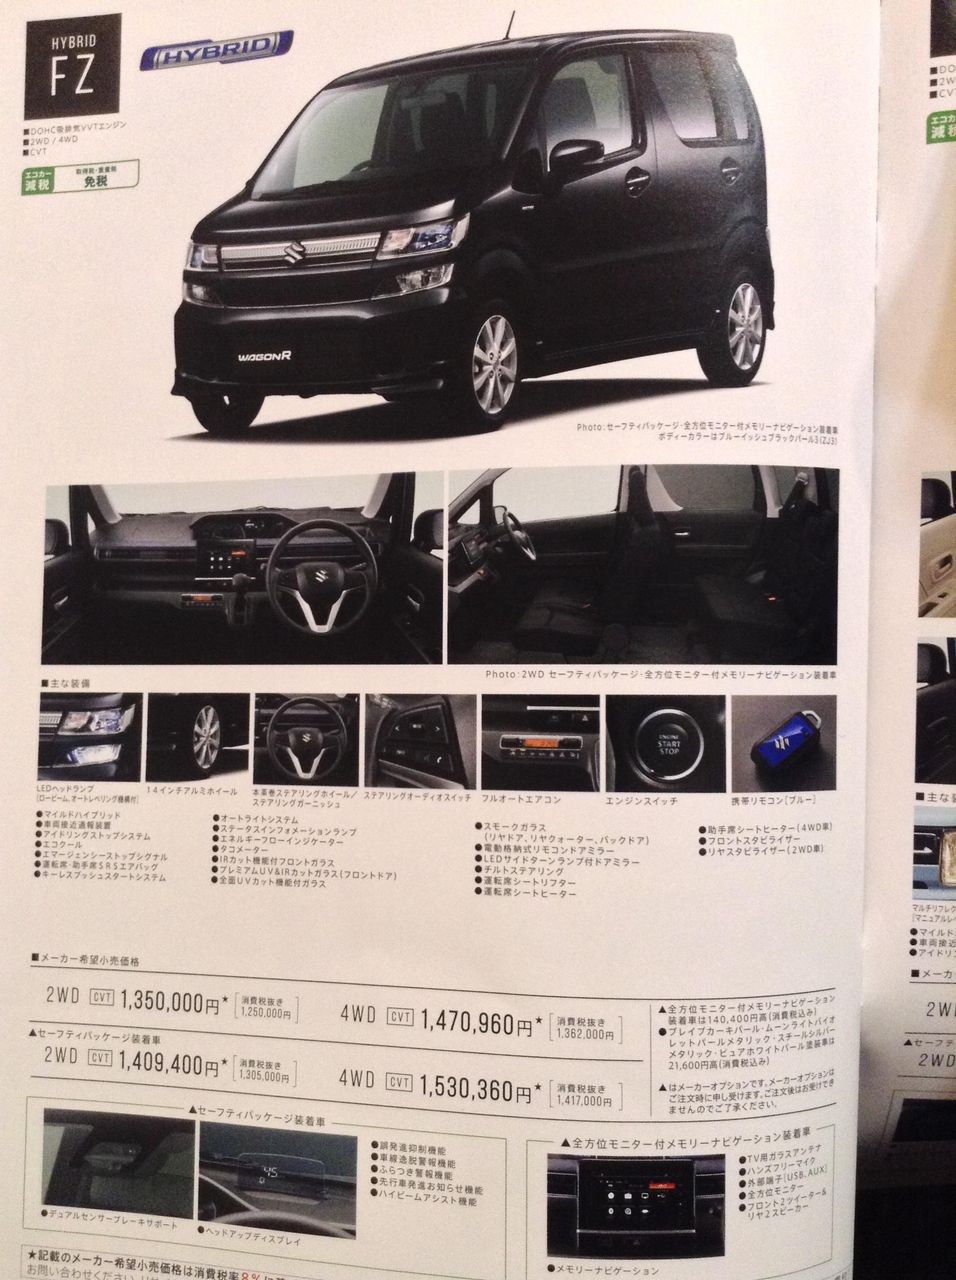 Next-gen-Suzuki-Wagon-R-hybrid-fz-brochure-leaked